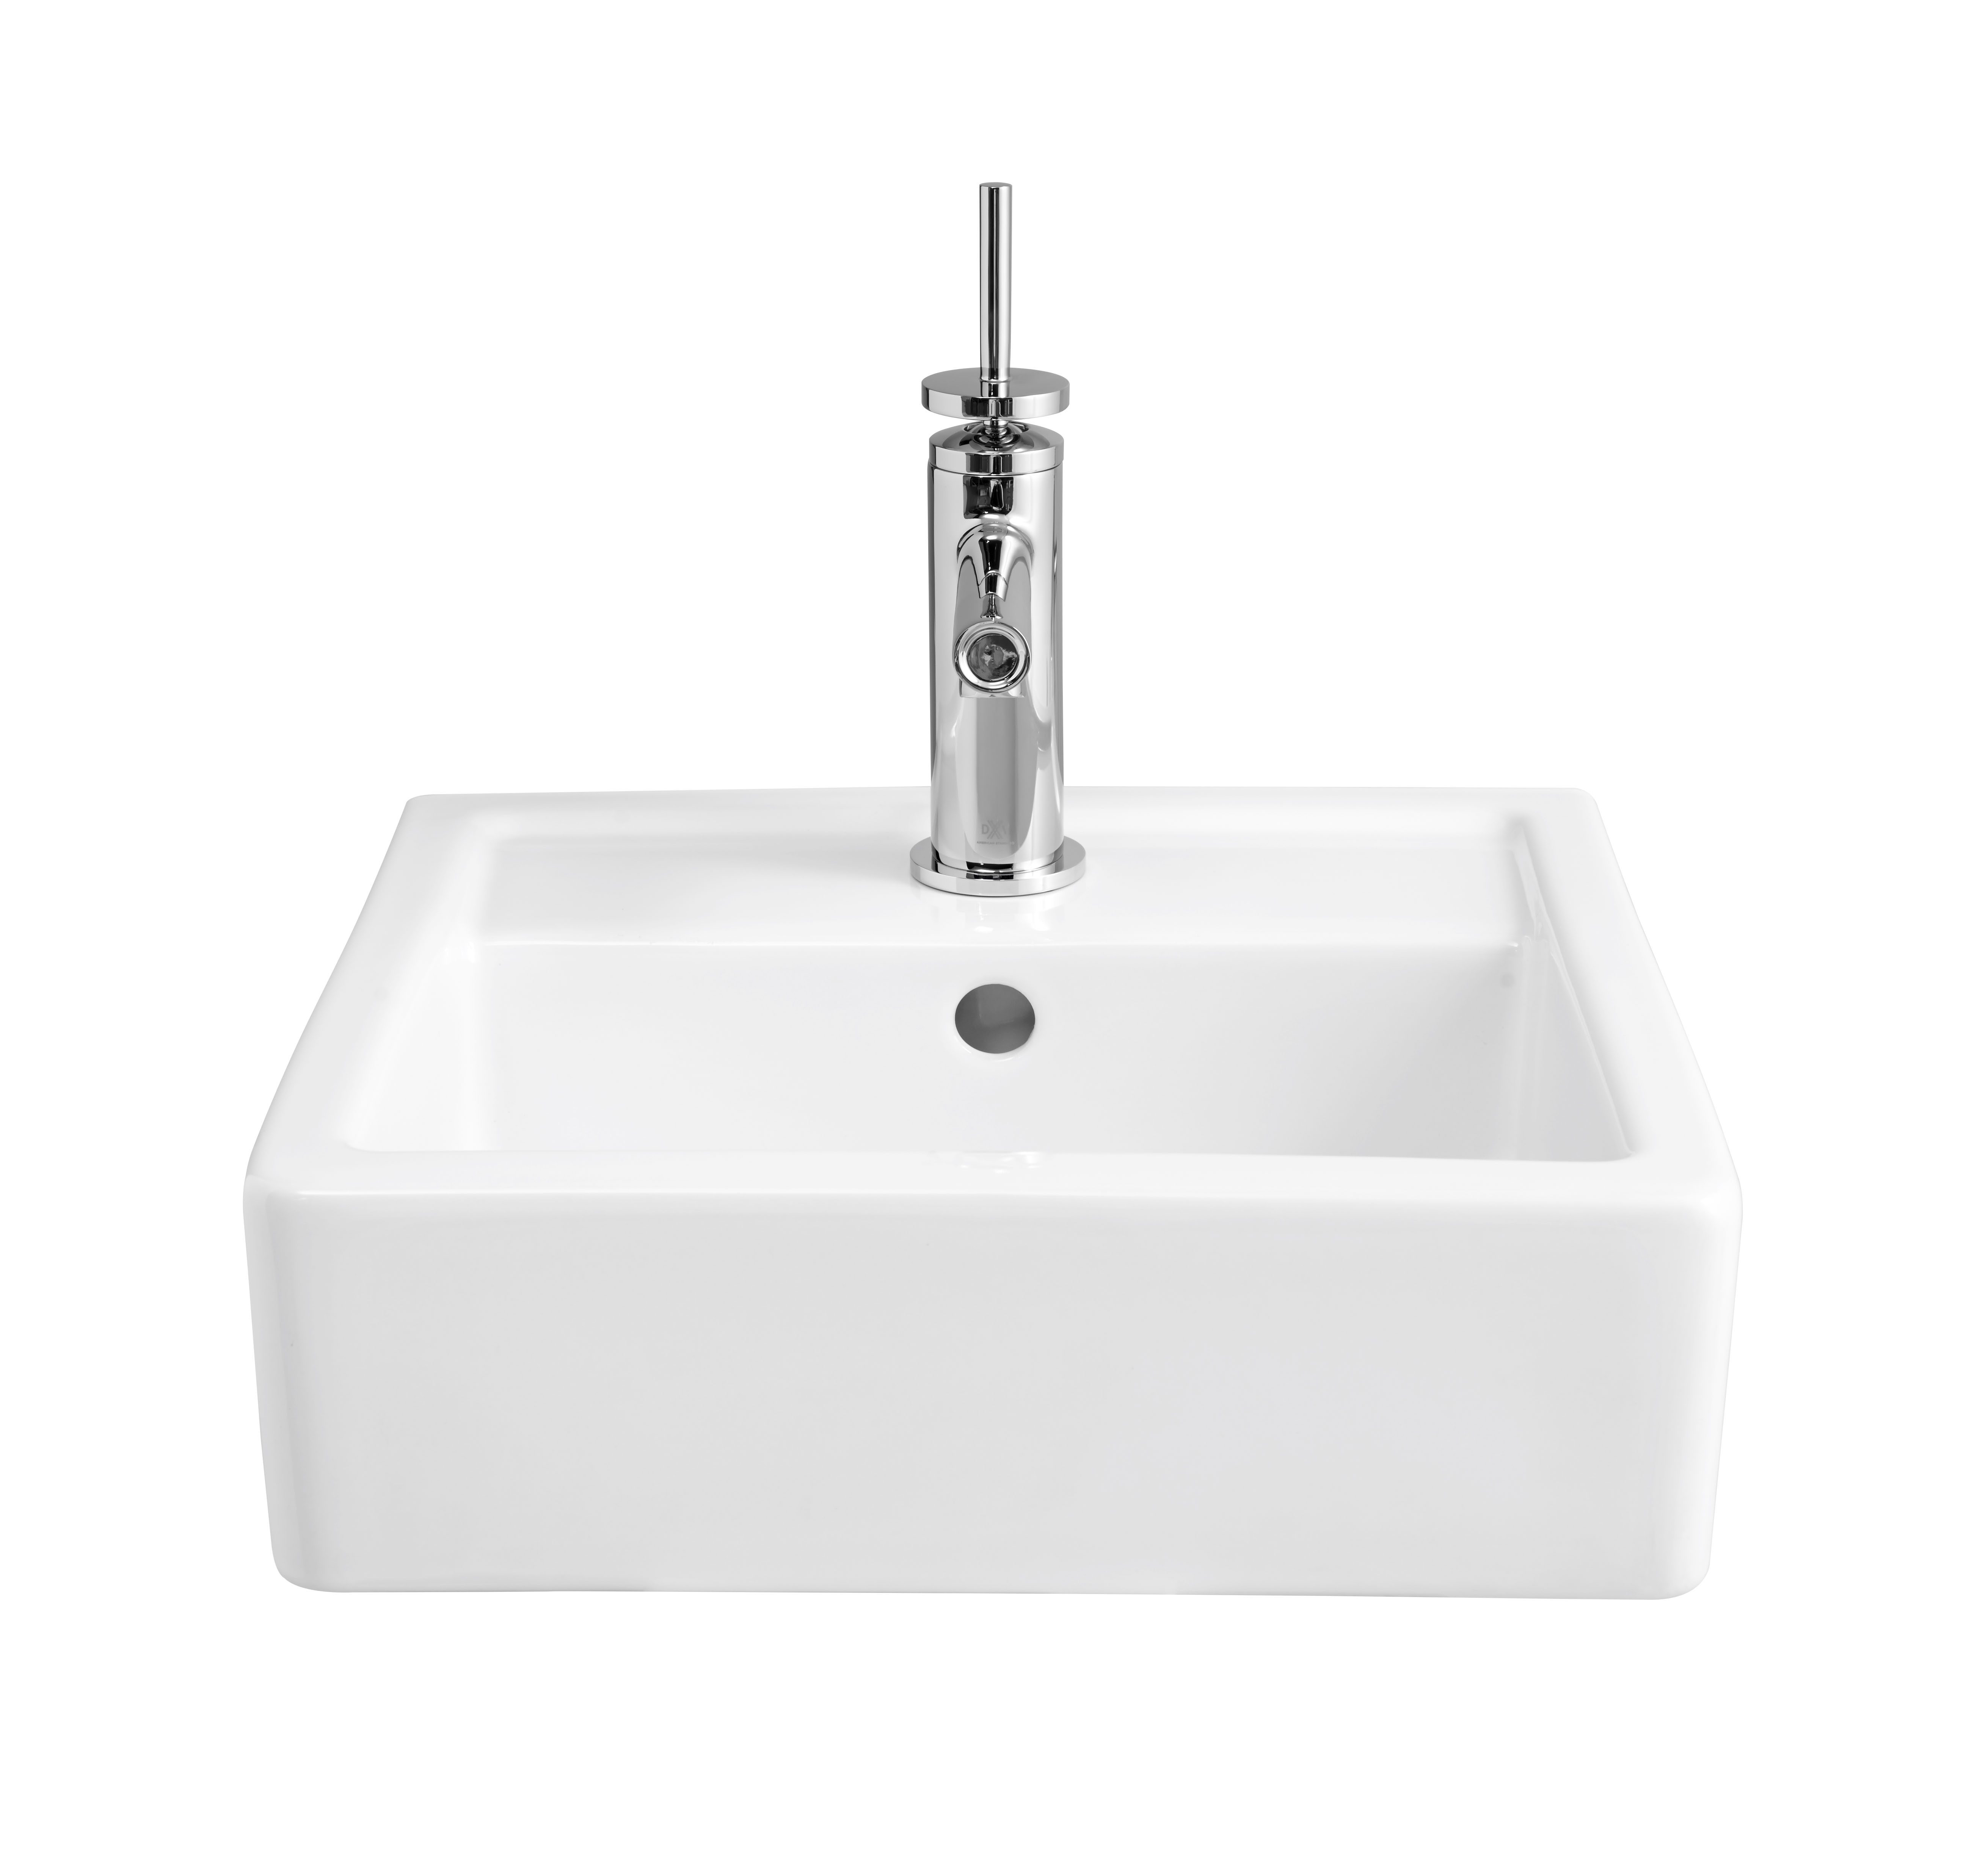 Cossu® Pedestal Sink Top, 1-Hole with Pedestal Leg